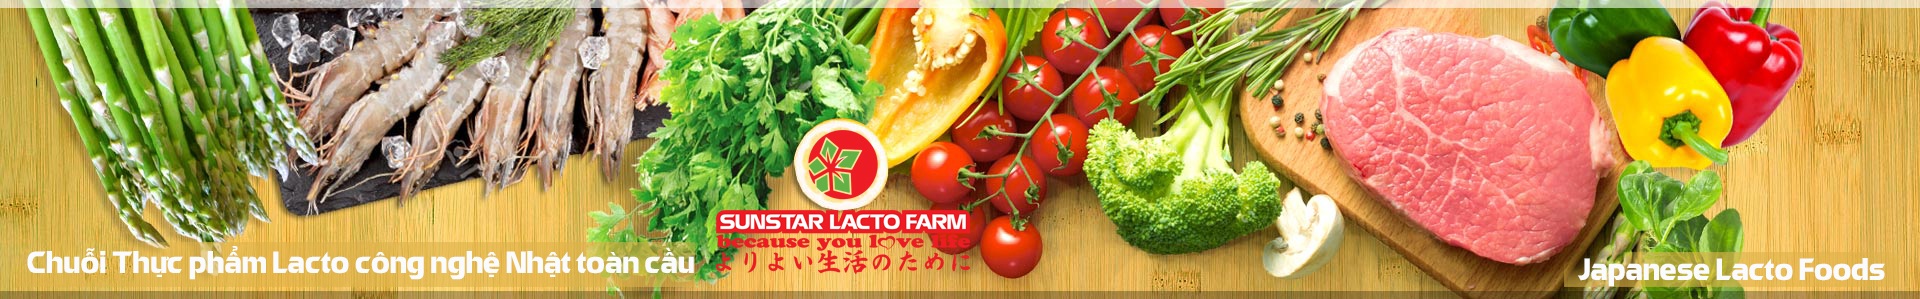 Thực phẩm công nghệ Nhật cho người Việt Sunstar lacto Farm